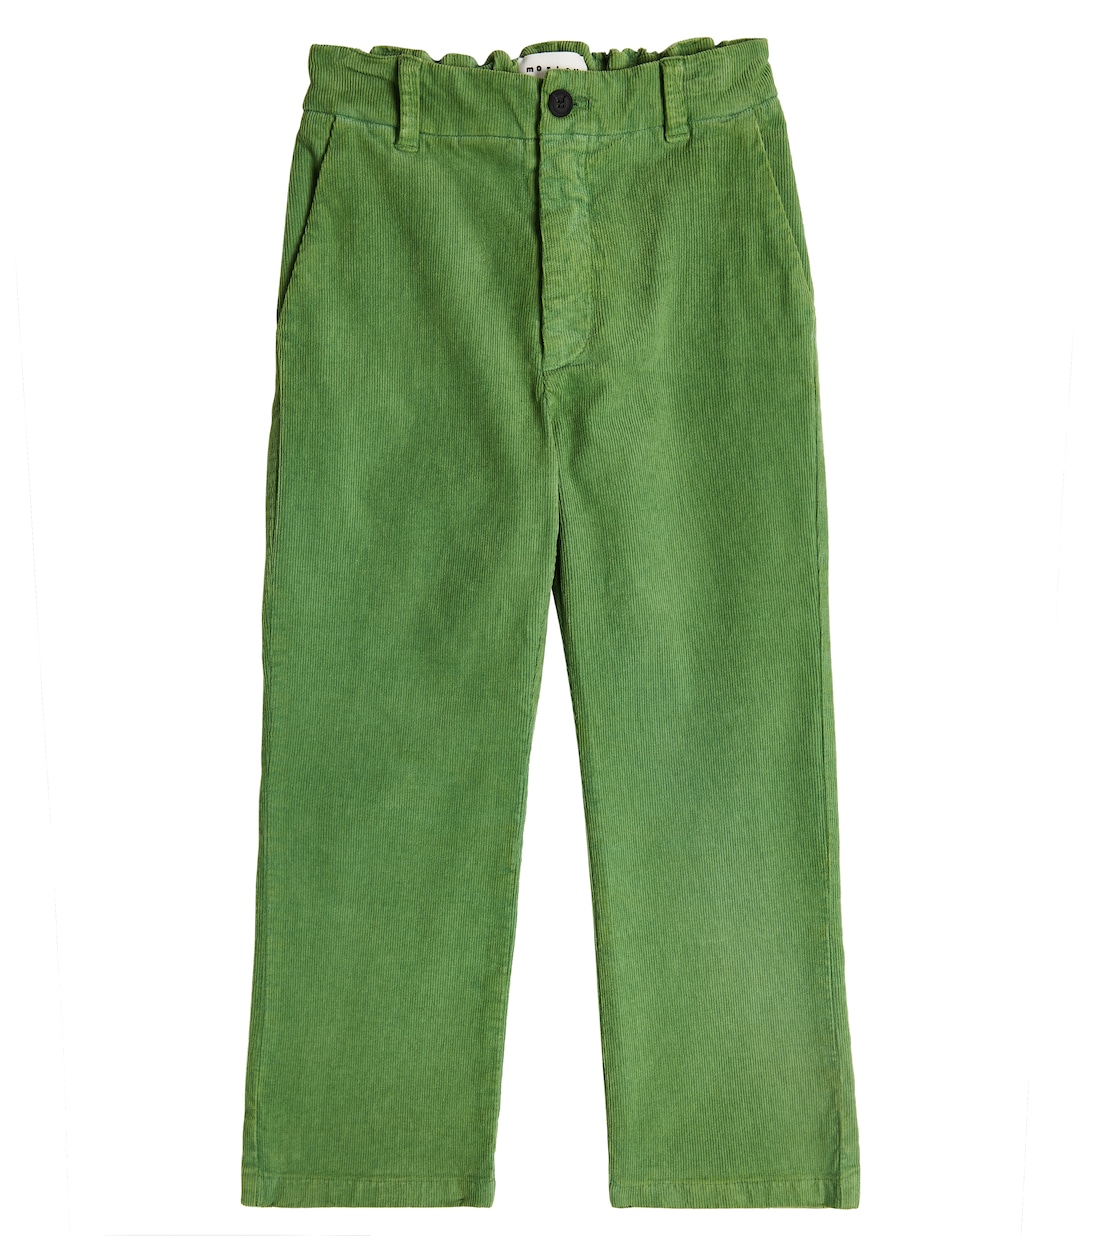 Хлопковые брюки Morley, зеленый